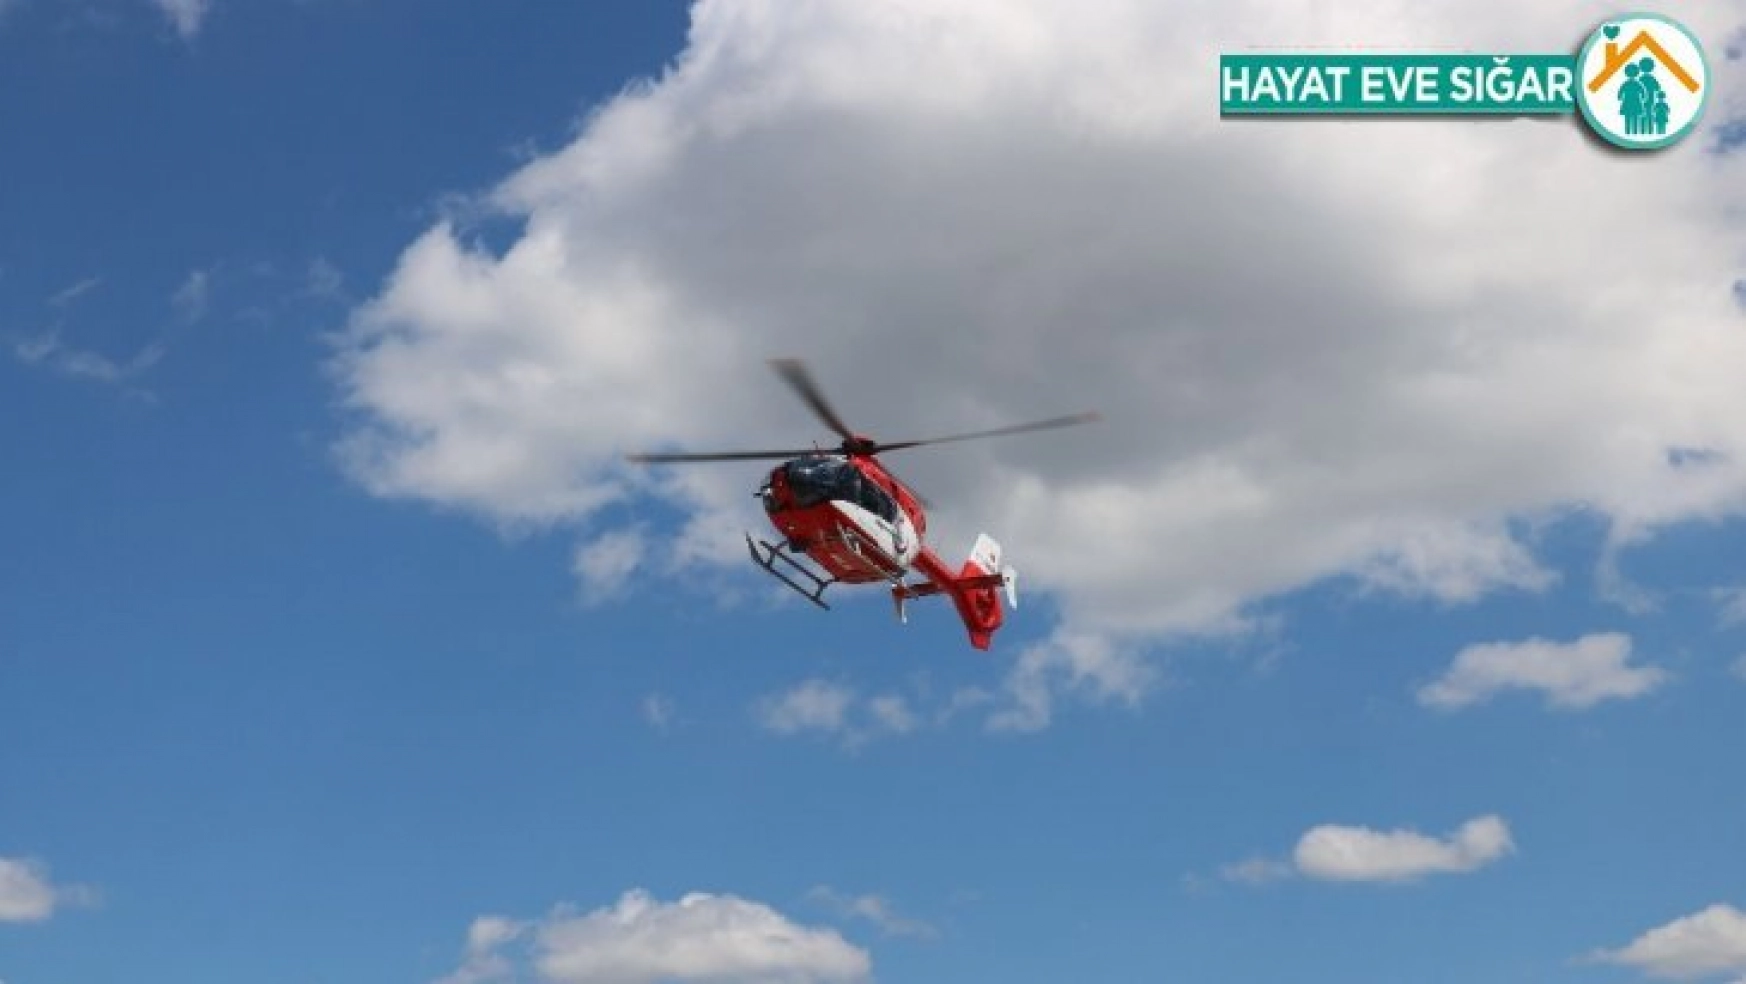 His kaybı yaşadı,helikopter ambulansla hastaneye kaldırıldı